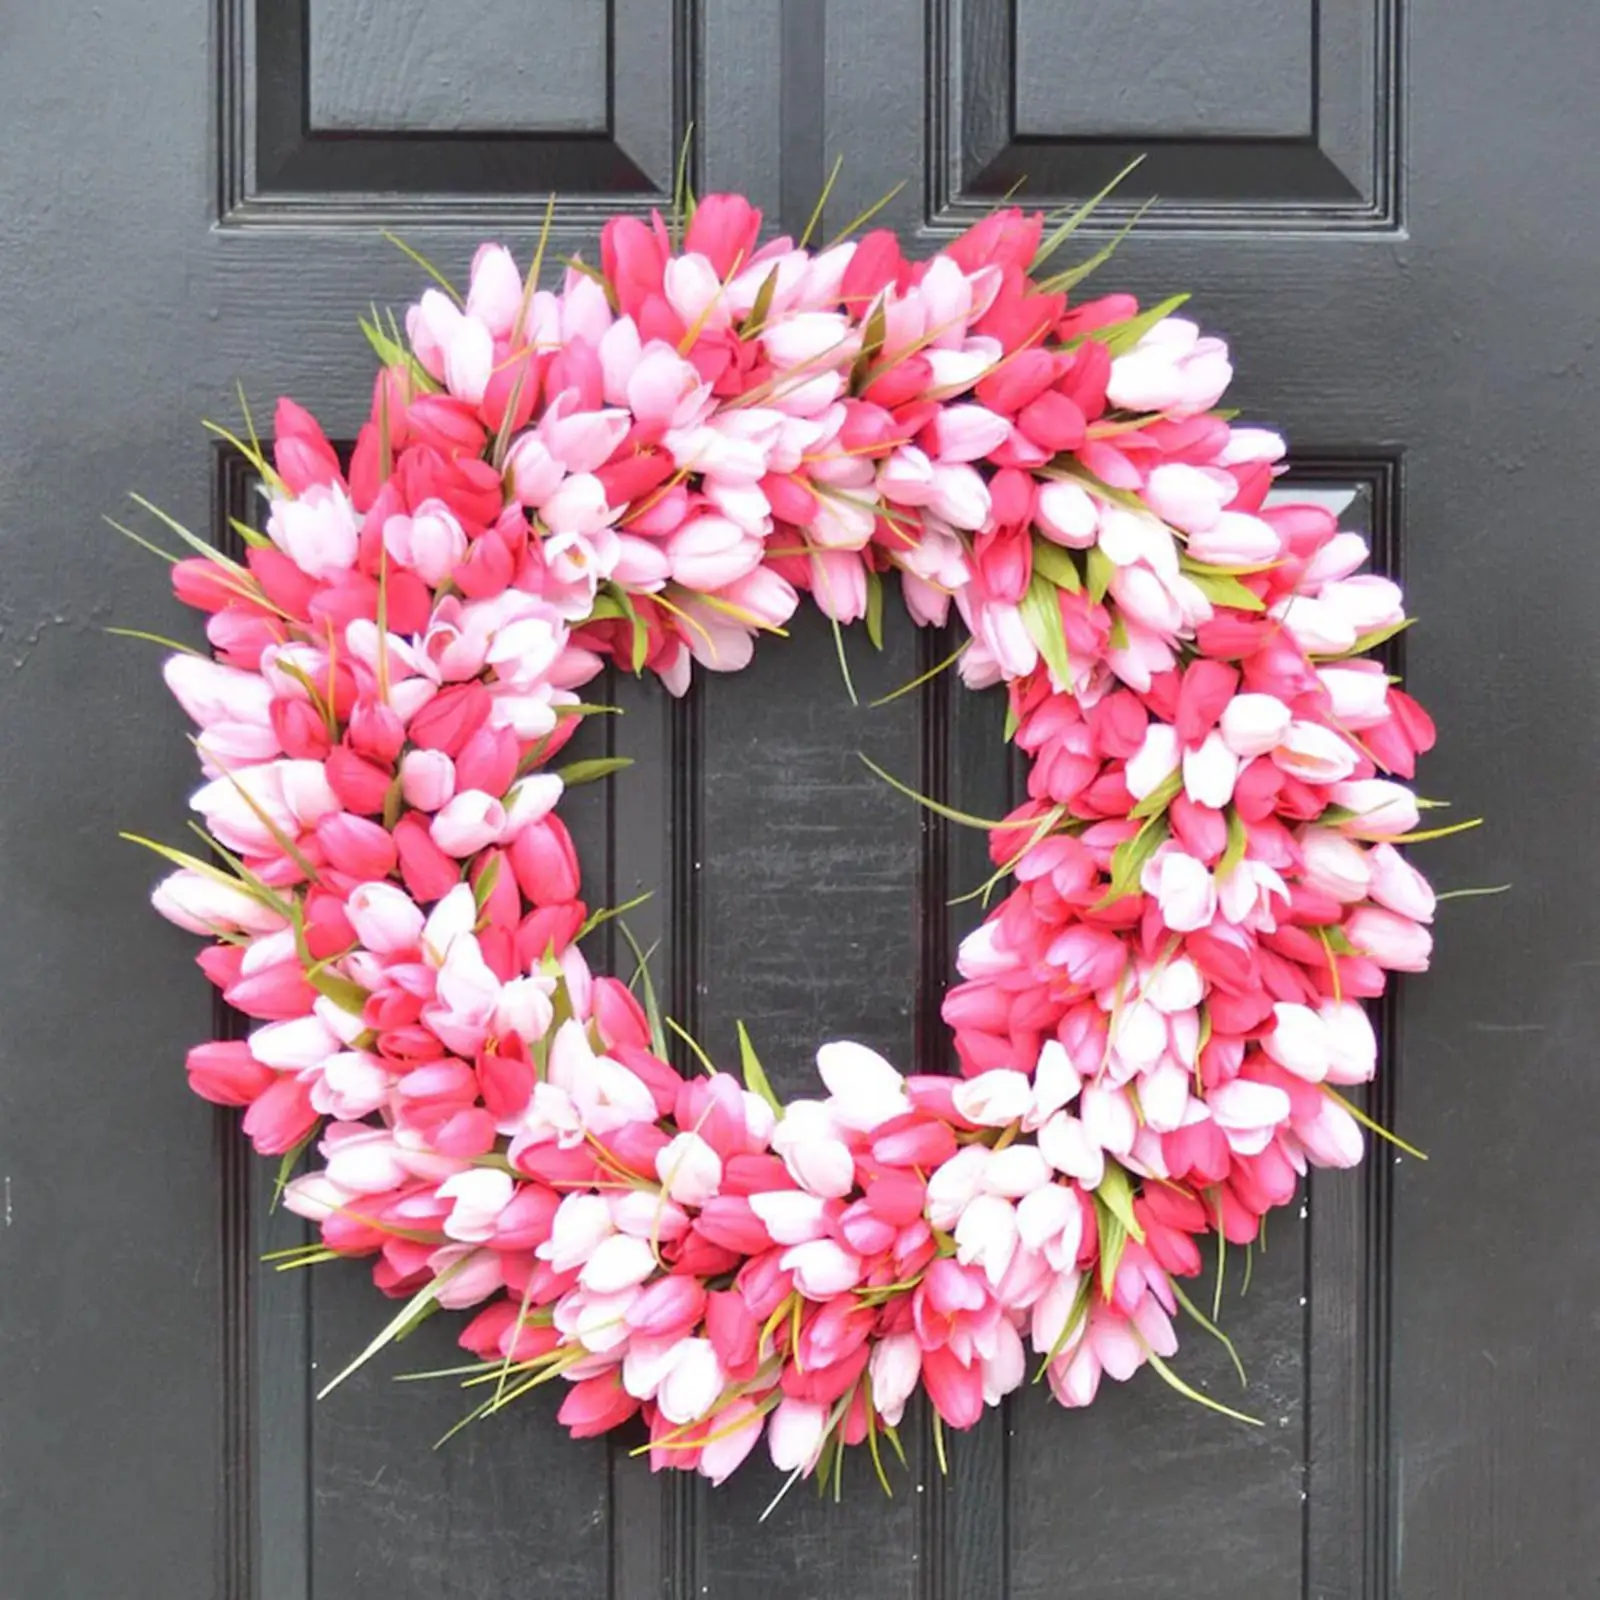 Tulips Wreath Artificial Flower Garland Front Door Window Hanging Easter Festival Indoor Summer Decoration